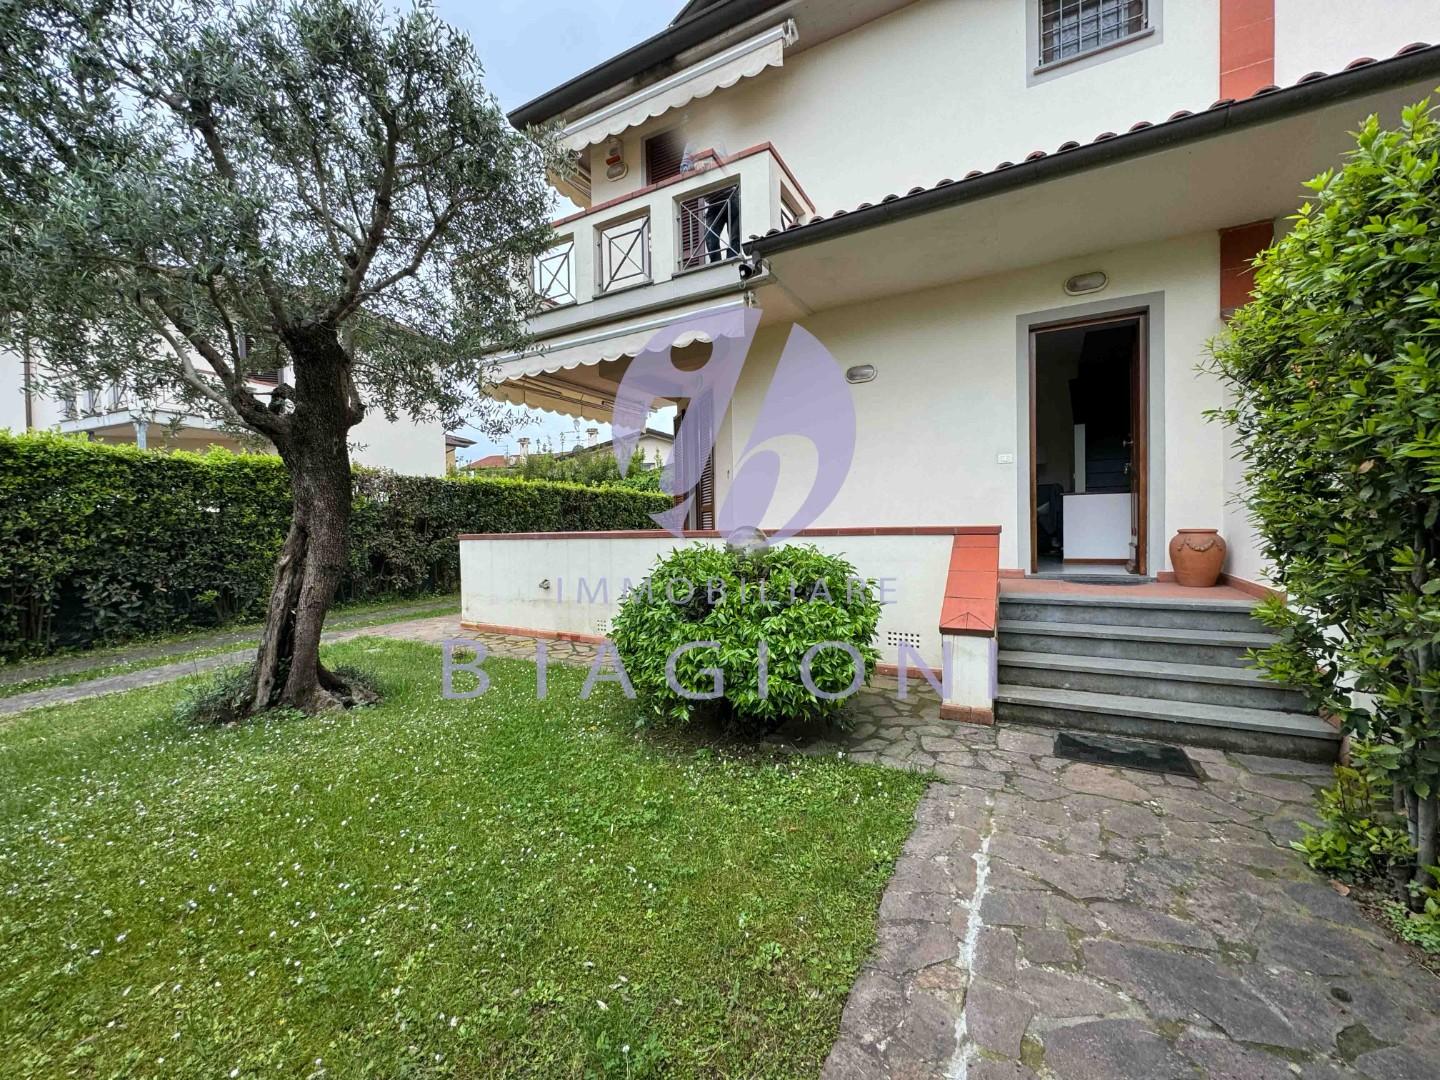 Villa Bifamiliare arredata in affitto, Pietrasanta fiumetto